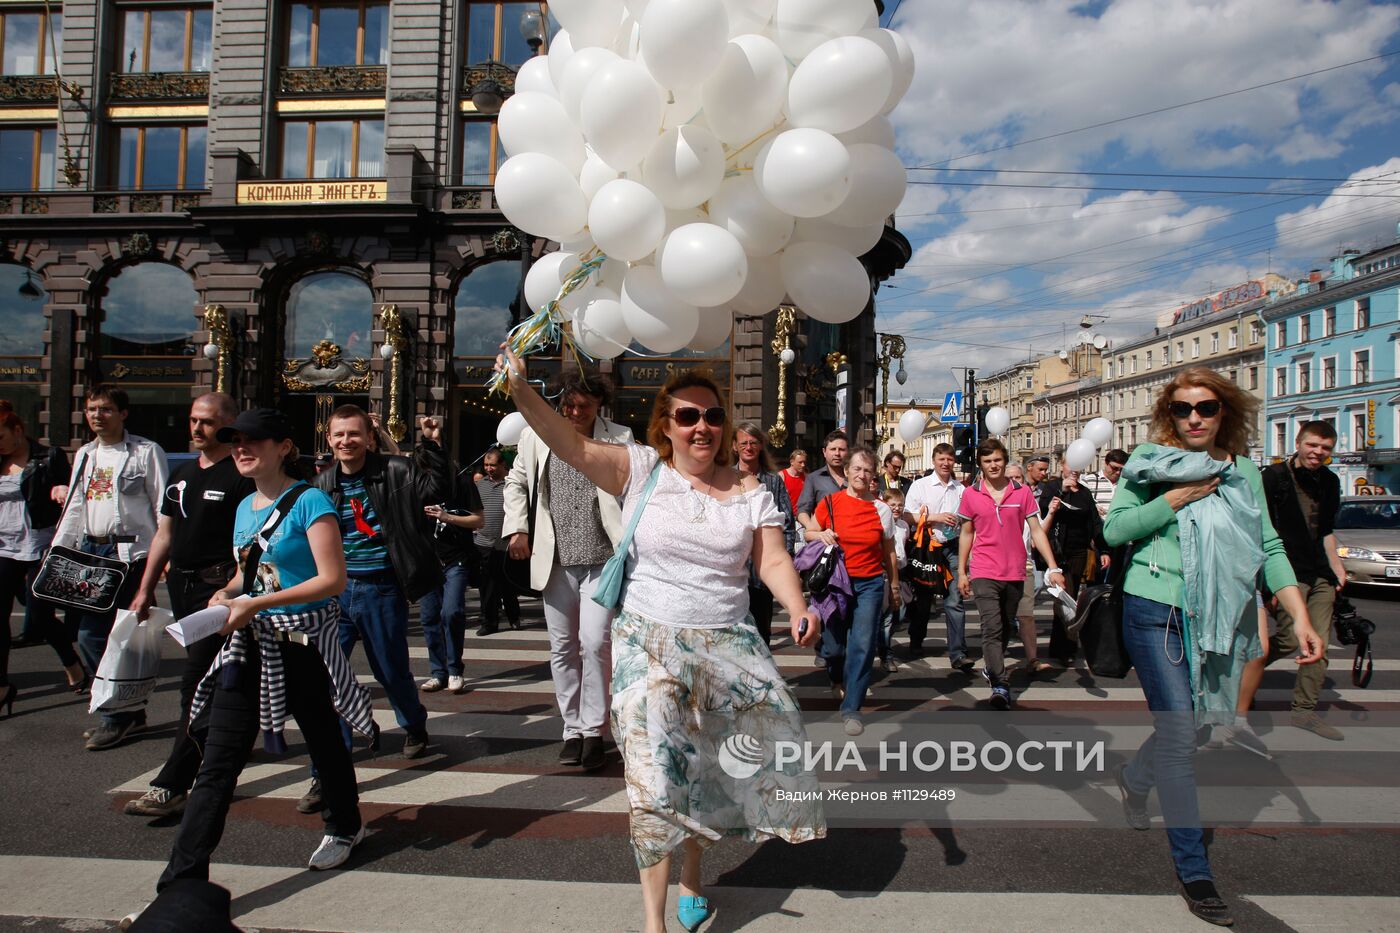 "Контрольная прогулка" оппозиции в Санкт-Петербурге